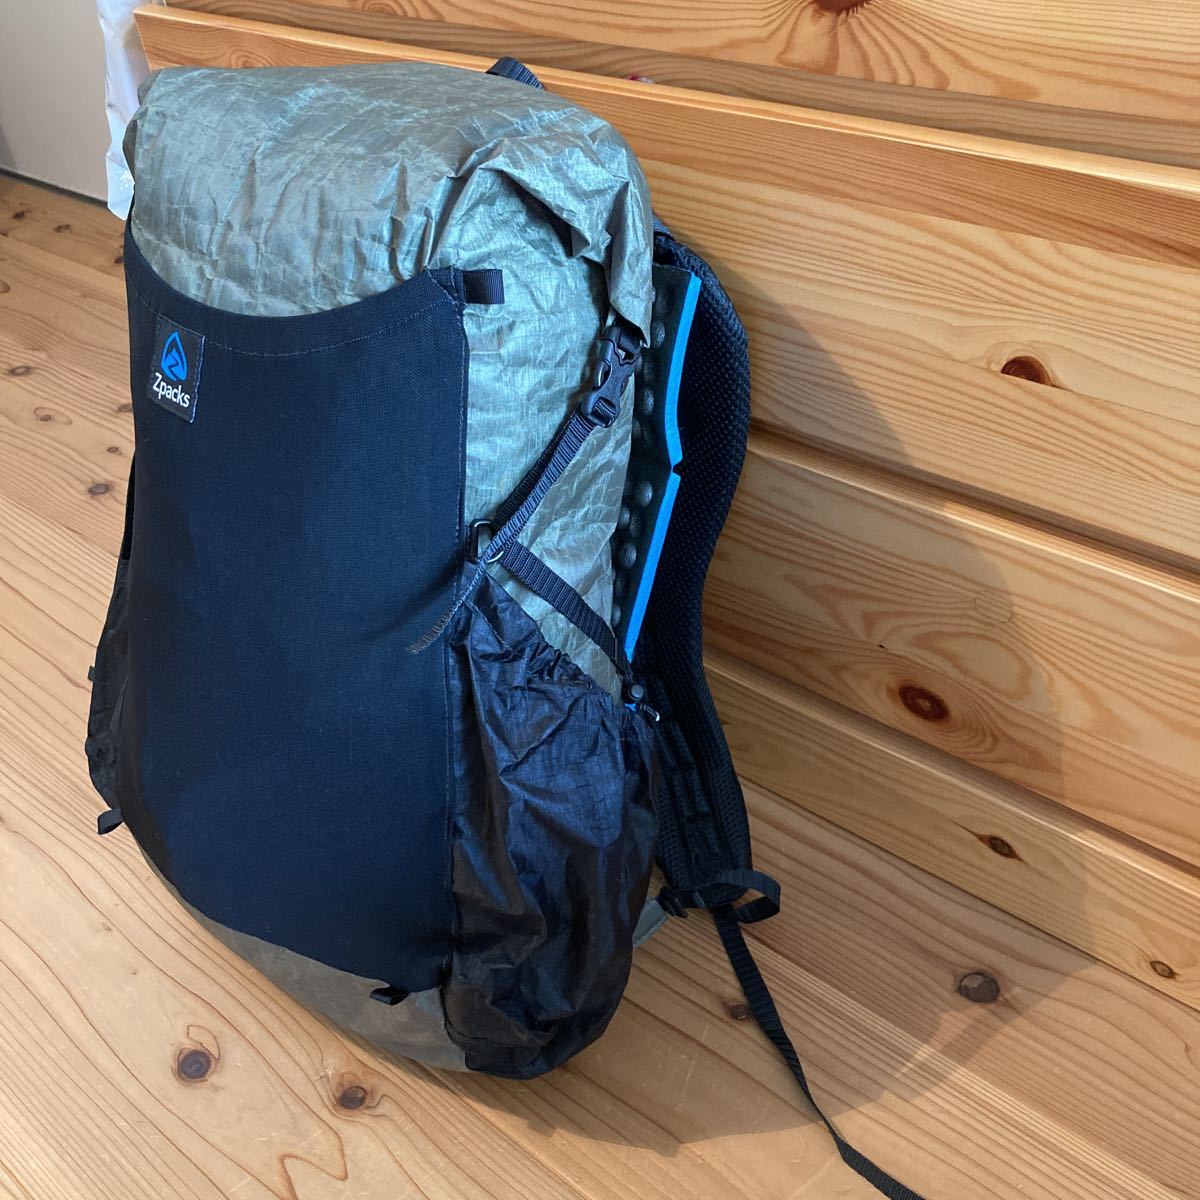 Zpacks Sub-Nero 30L Backpack-